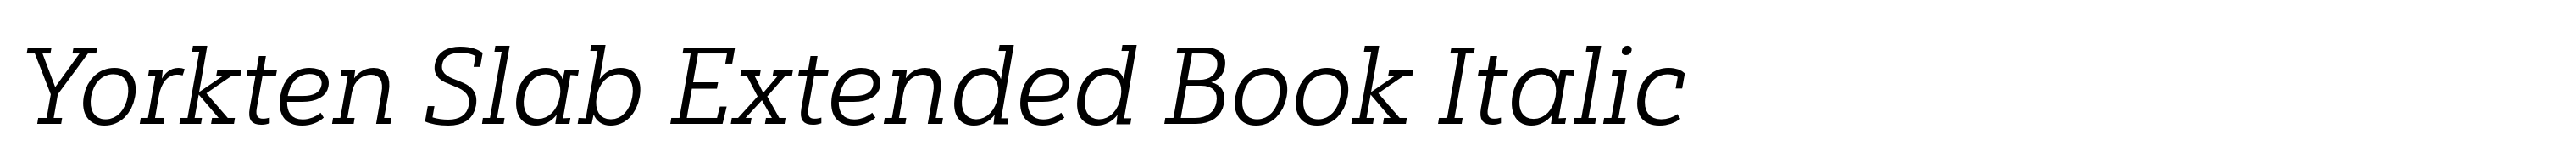 Yorkten Slab Extended Book Italic